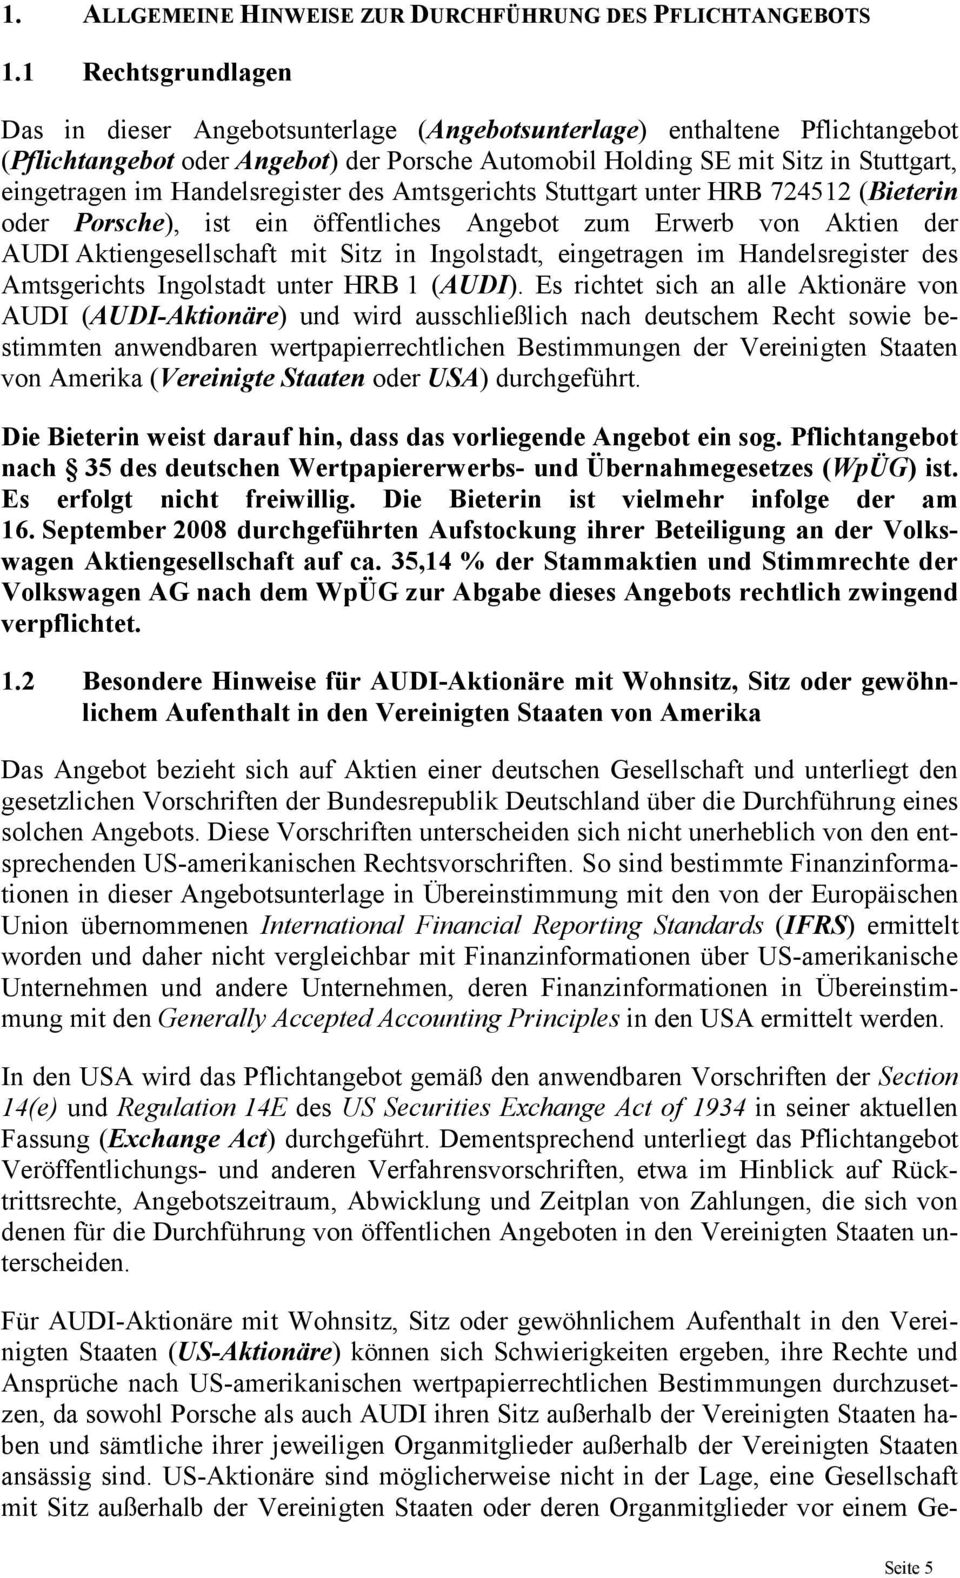 Handelsregister des Amtsgerichts Stuttgart unter HRB 724512 (Bieterin oder Porsche), ist ein öffentliches Angebot zum Erwerb von Aktien der AUDI Aktiengesellschaft mit Sitz in Ingolstadt, eingetragen